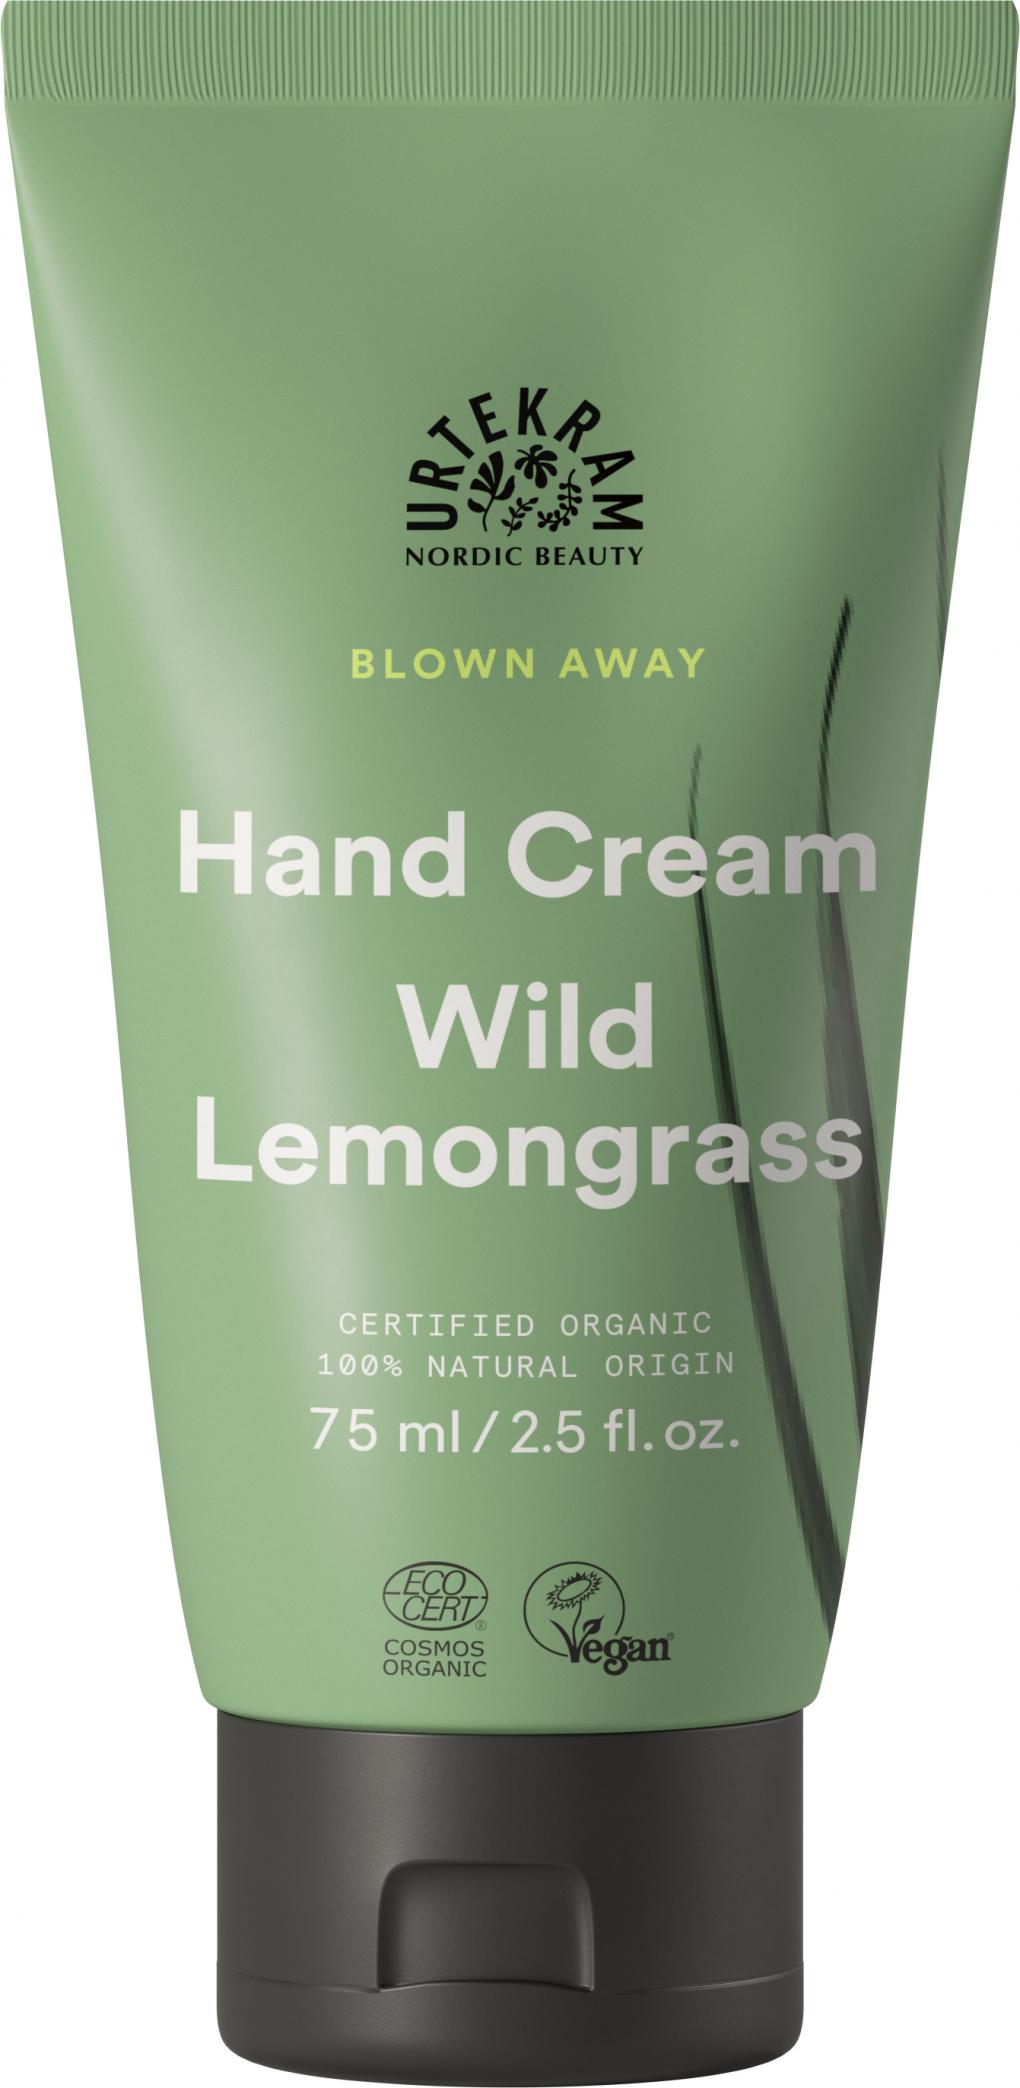 Hand Cream Wild Lemongrass 75ml